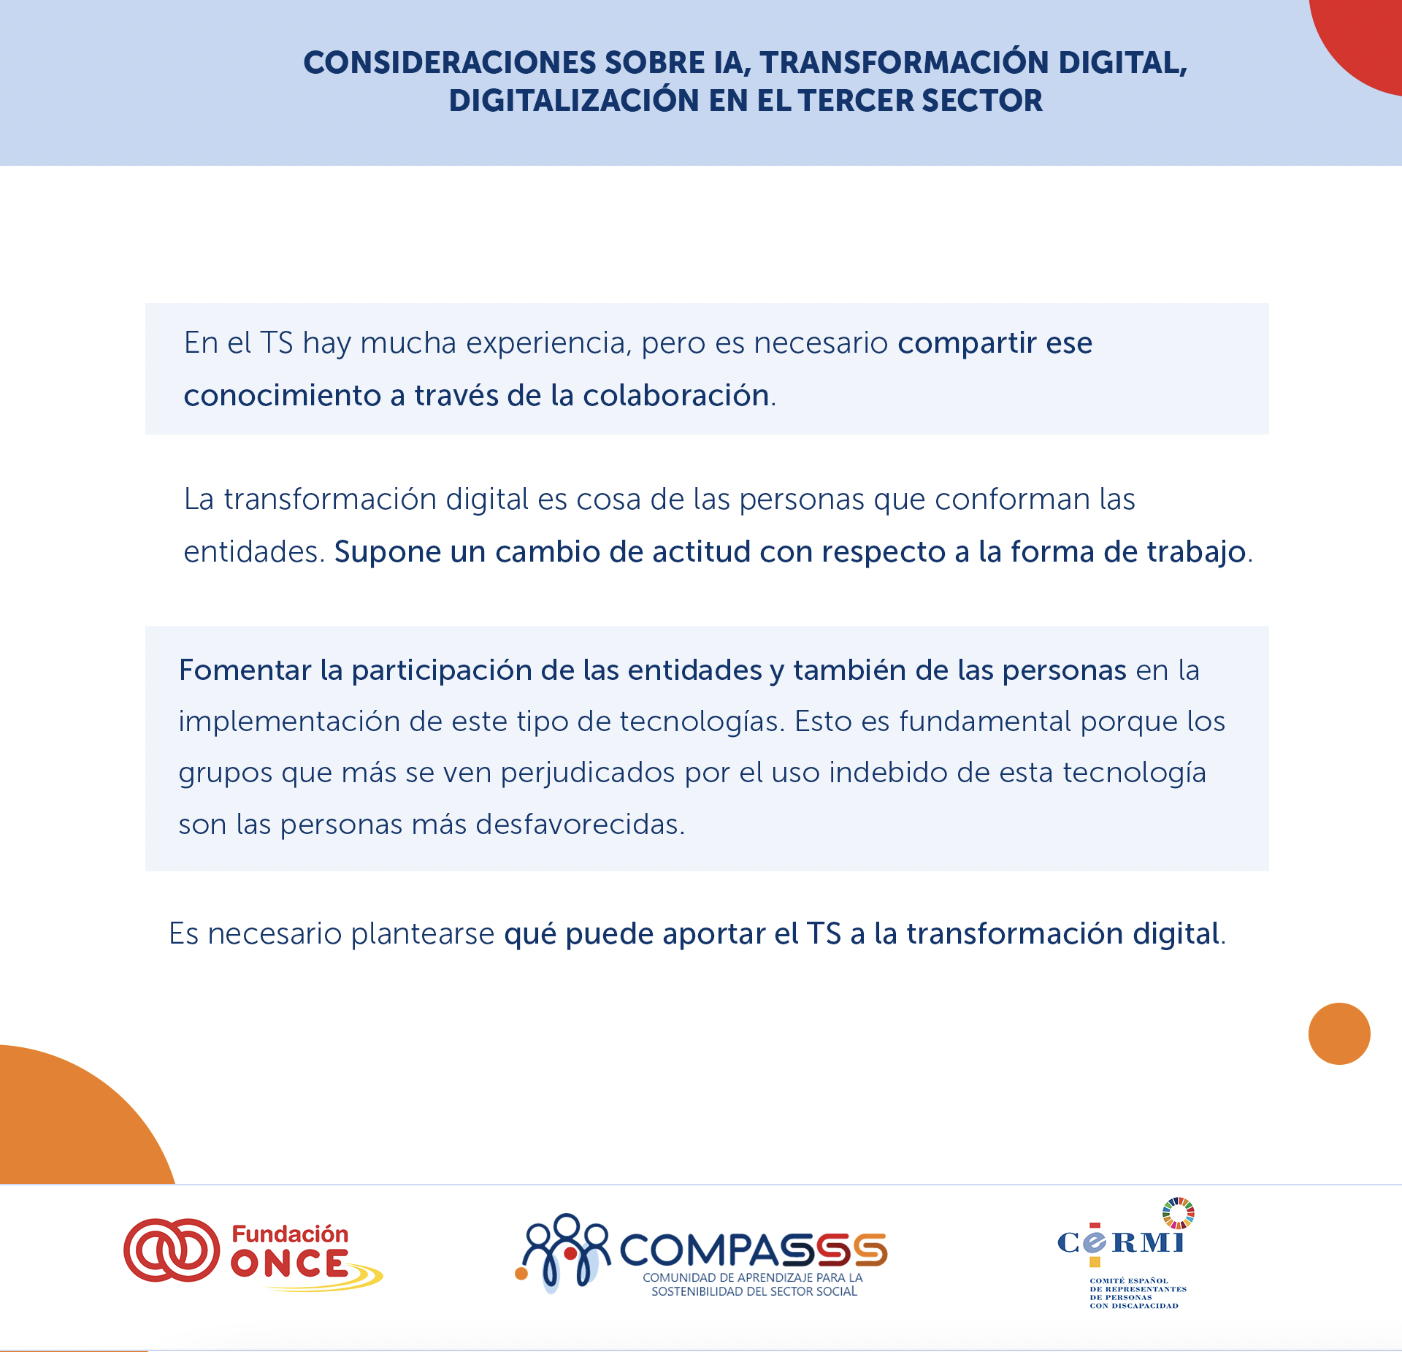 Imagen sobre las consideraciones en temas de transformación digital, IA y digitalización en el Tercer Sector